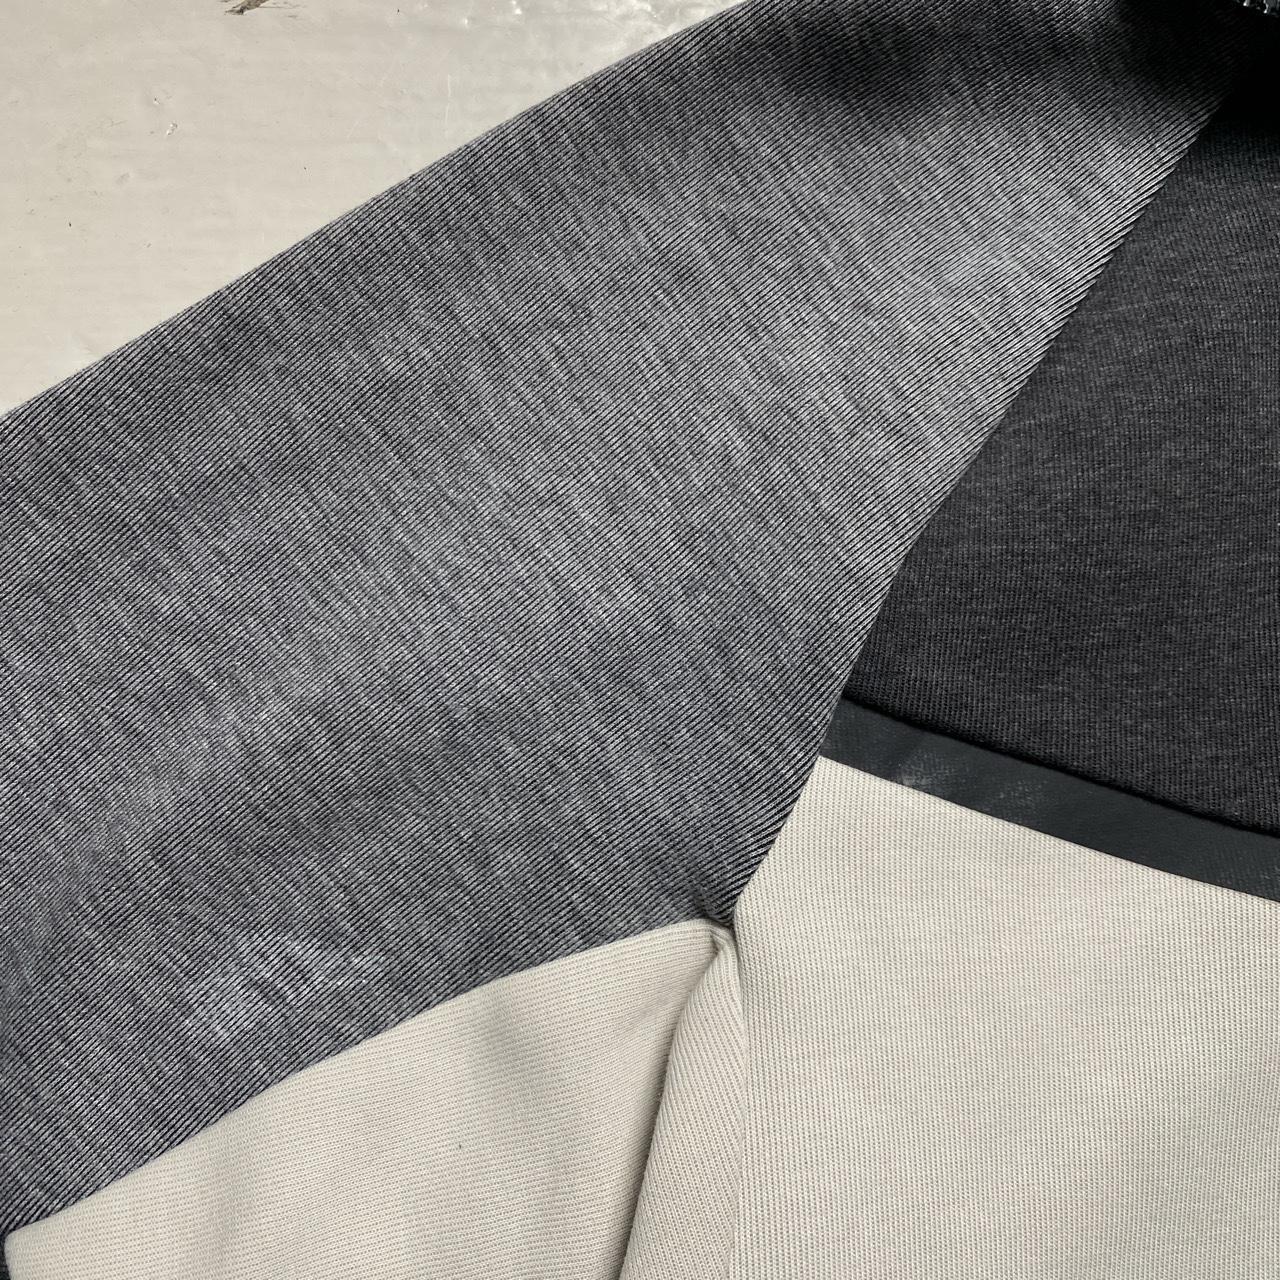 Nike Tech Fleece Multi Colour Grey and White